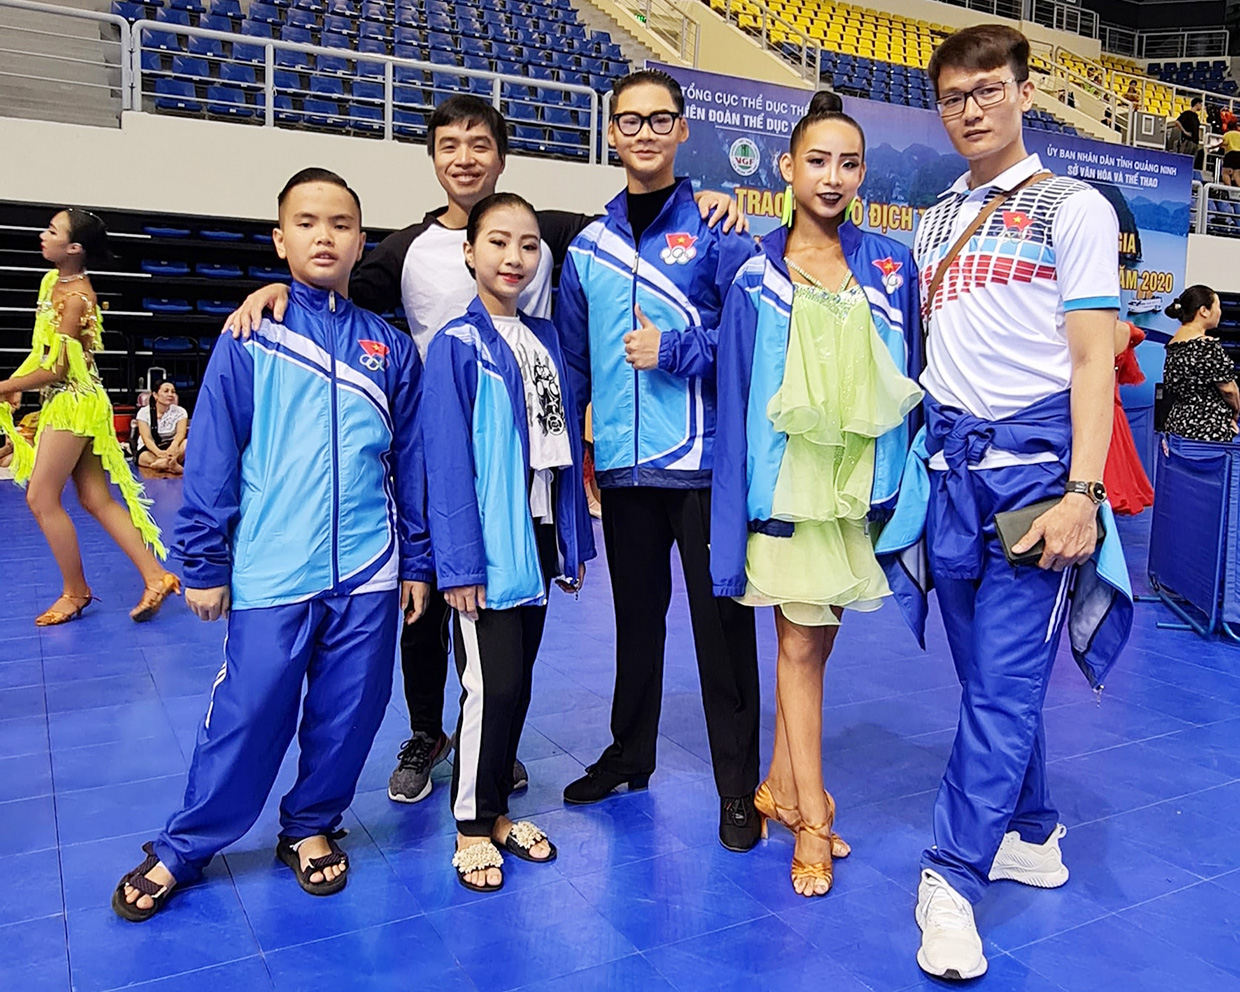  Đội tuyển Dancesport Gia Lai tham gia tại Giải vô địch trẻ, thiếu niên quốc gia và Cúp khiêu vũ thể thao mở rộng toàn quốc 2020. Ảnh: Hà Phương